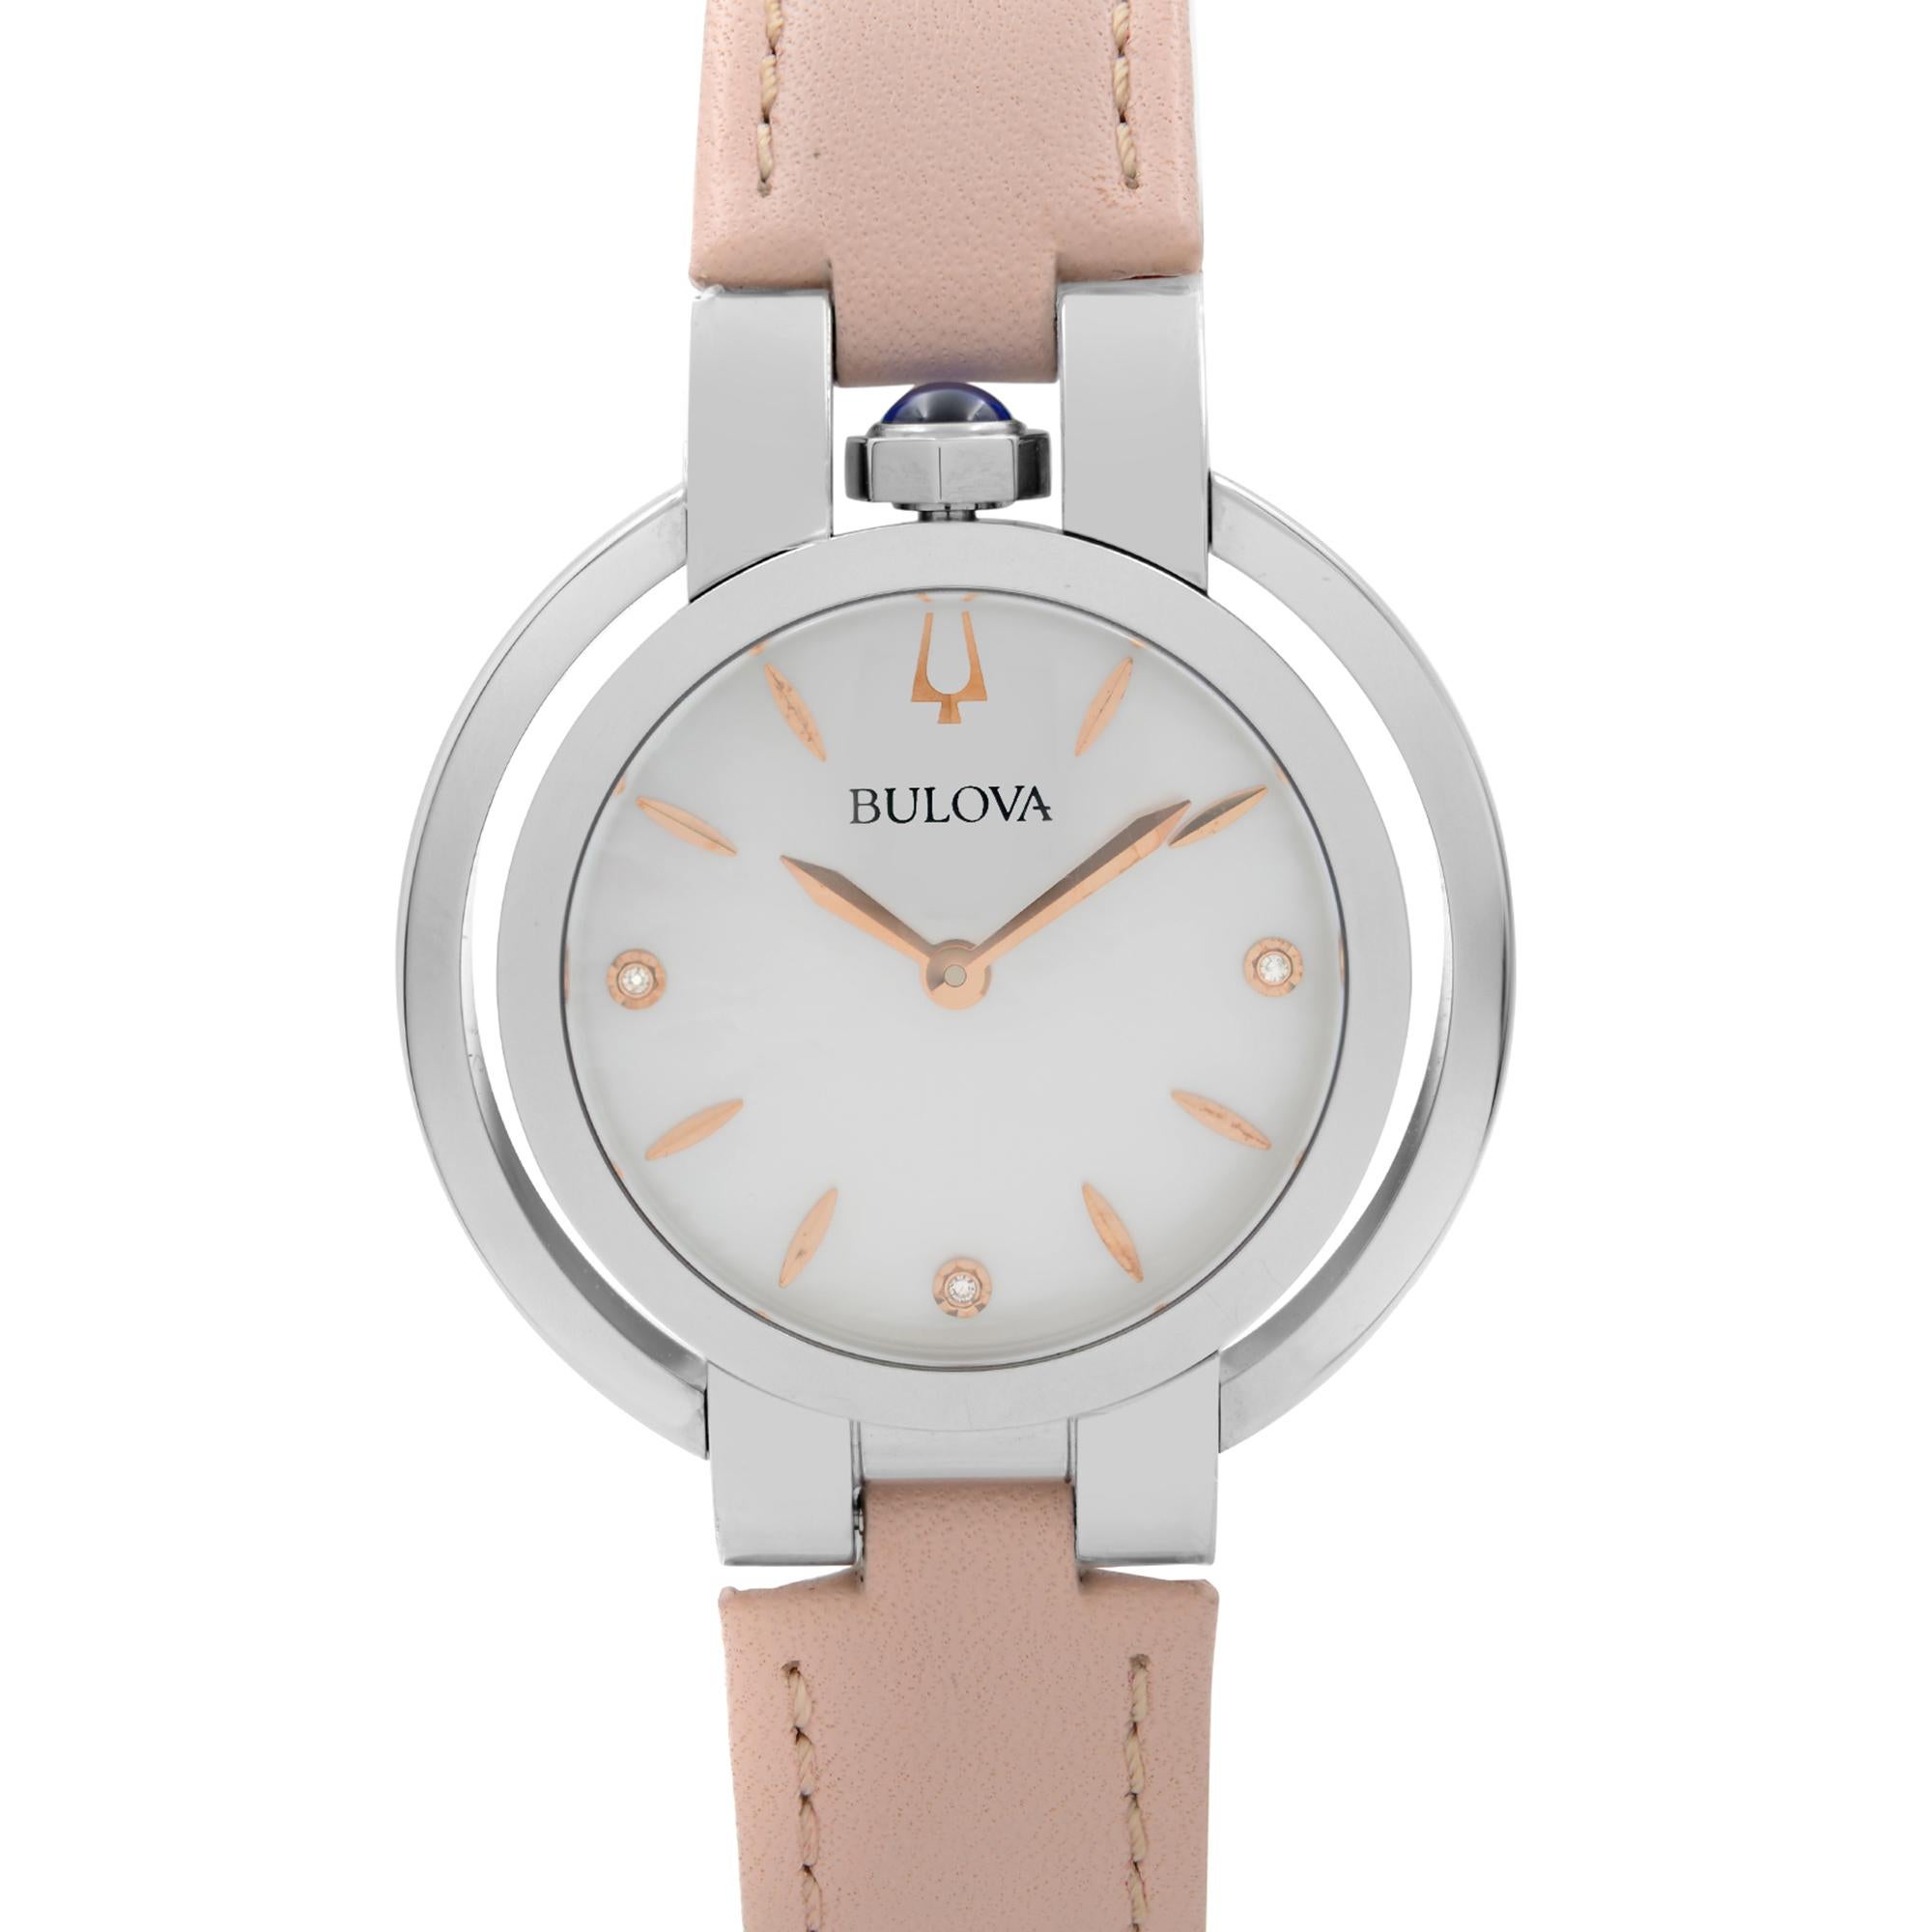 Ungetragene Bulova Rubaiyat Diamond Accent Steel Pink Strap Quartz Ladies Watch 96P197. Die Uhr könnte einen Anhänger vermissen. Dieser schöne Zeitmesser verfügt über: Edelstahlgehäuse mit rosafarbenem Lederband, feste Edelstahllünette, weißes